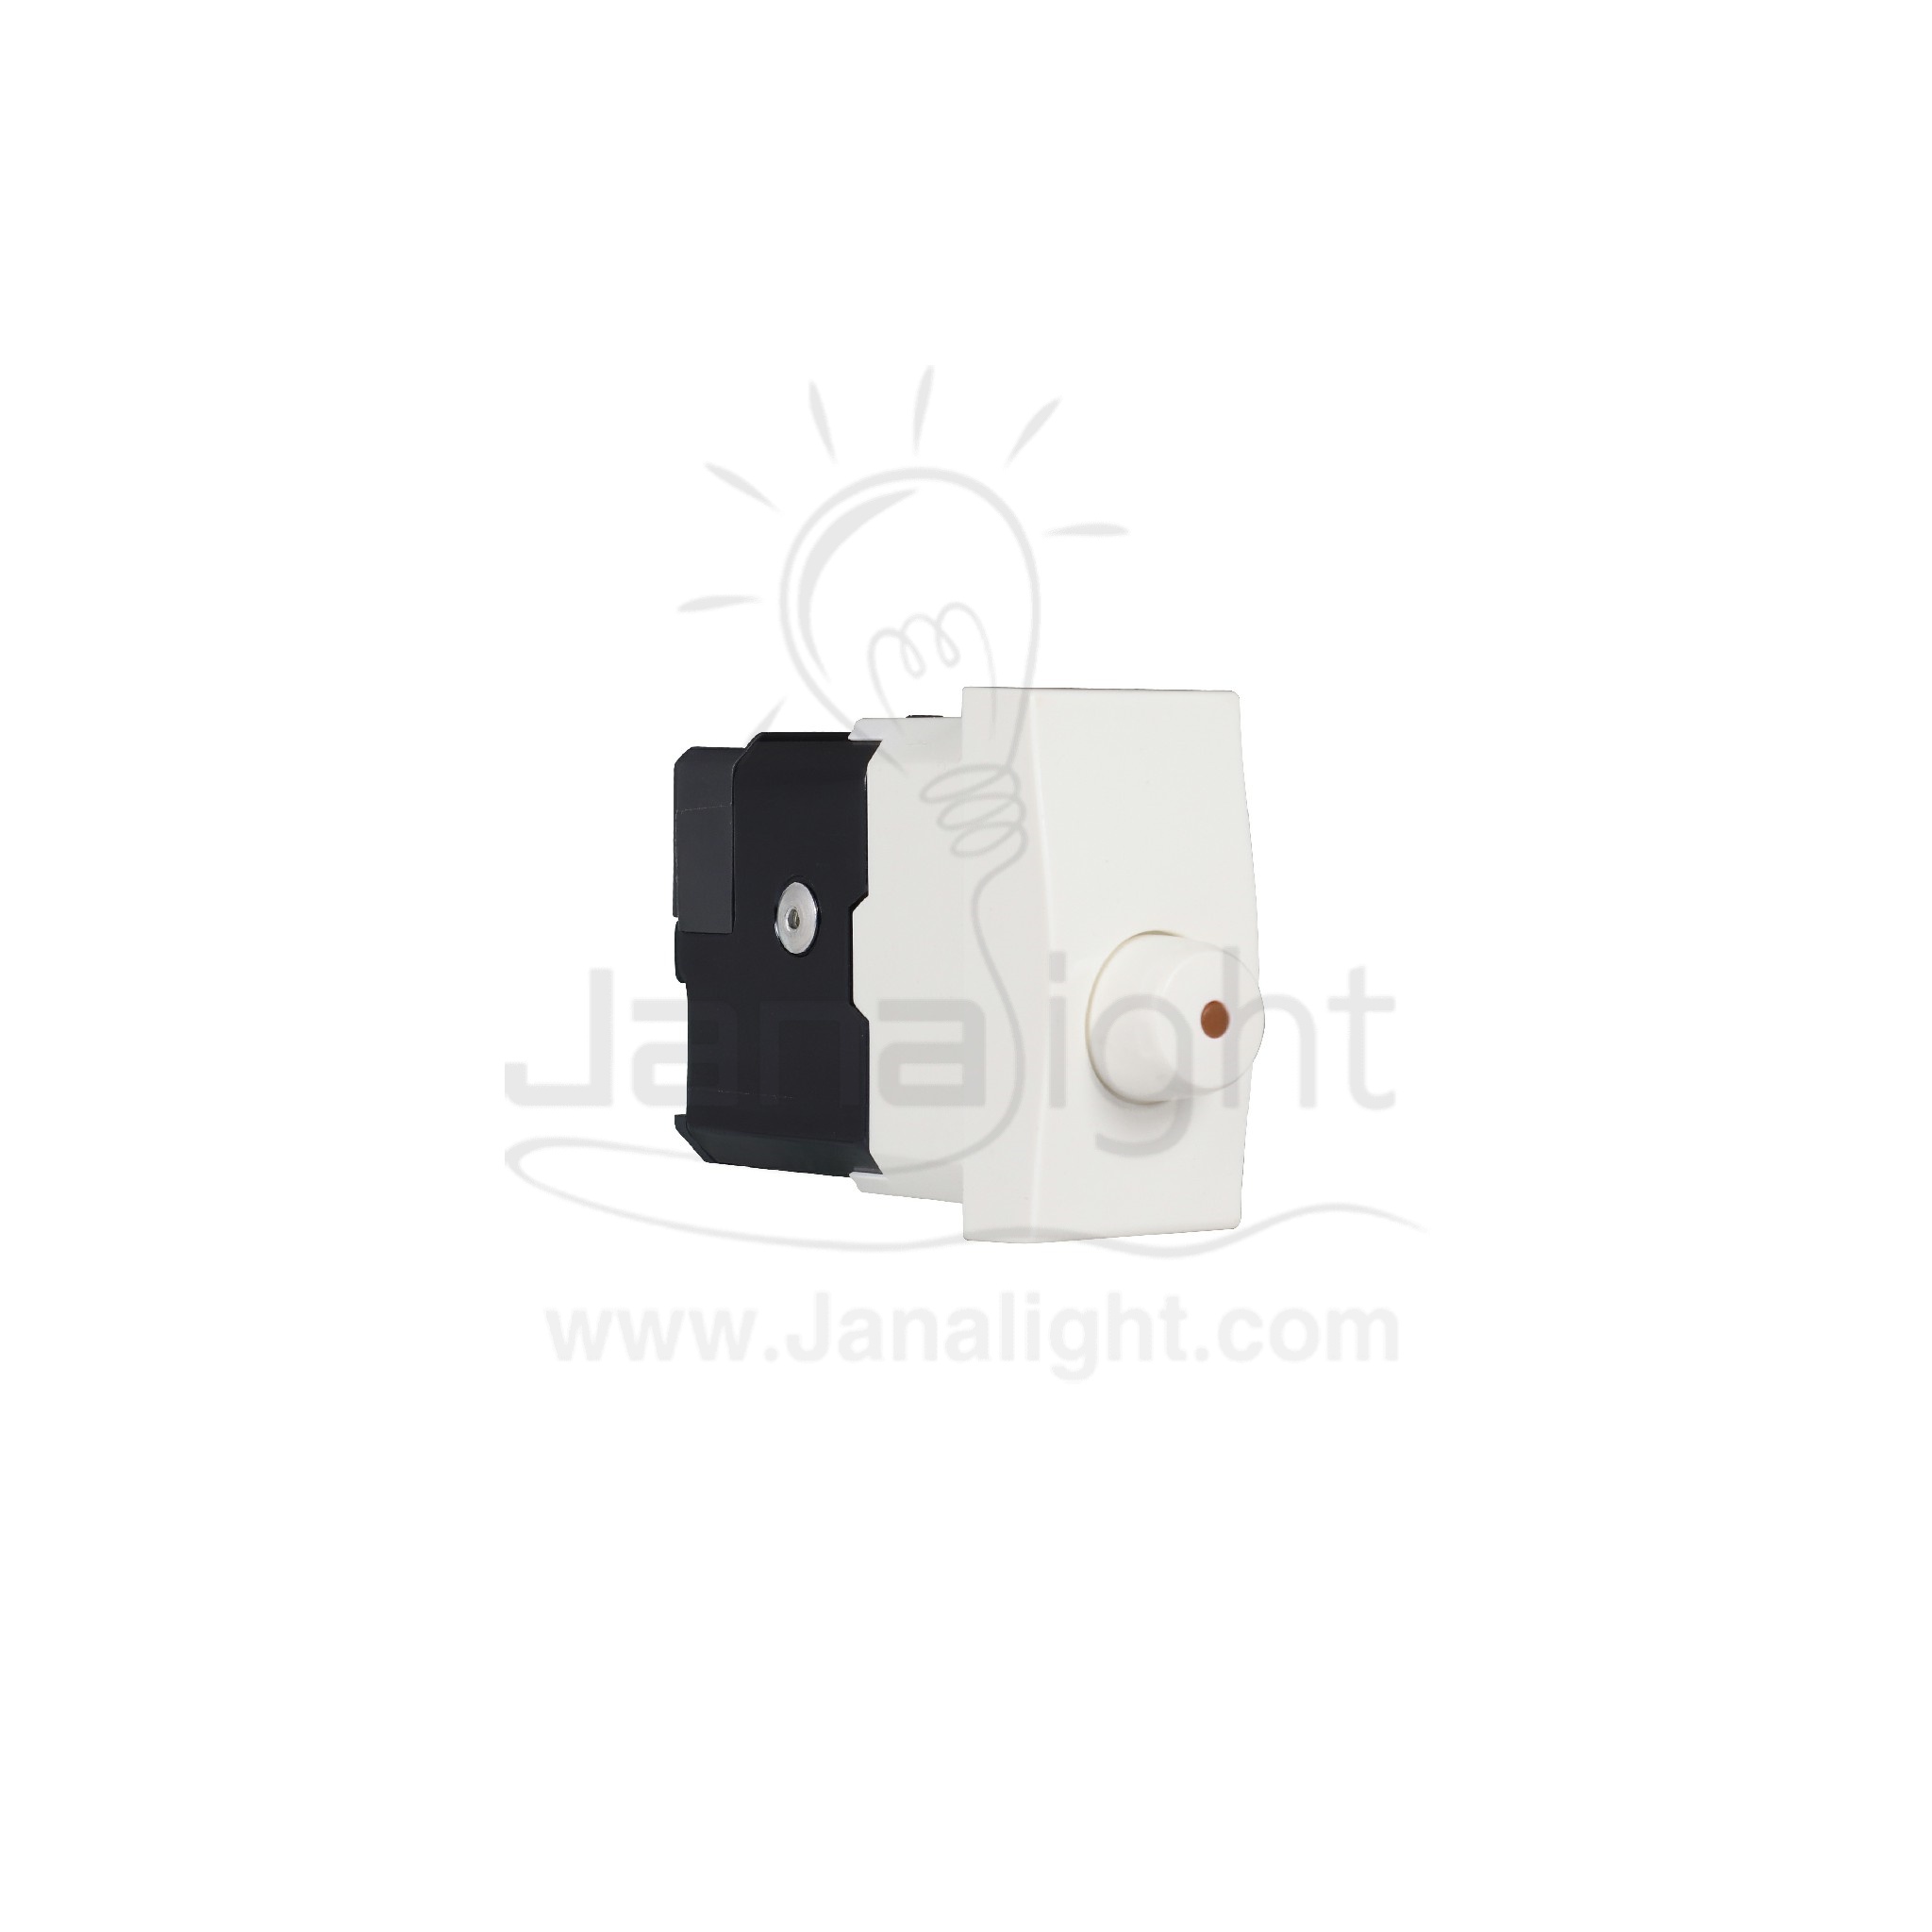 دايمر انارة سوليدا ابيض D4403 Solida White Light Dimmer Switch